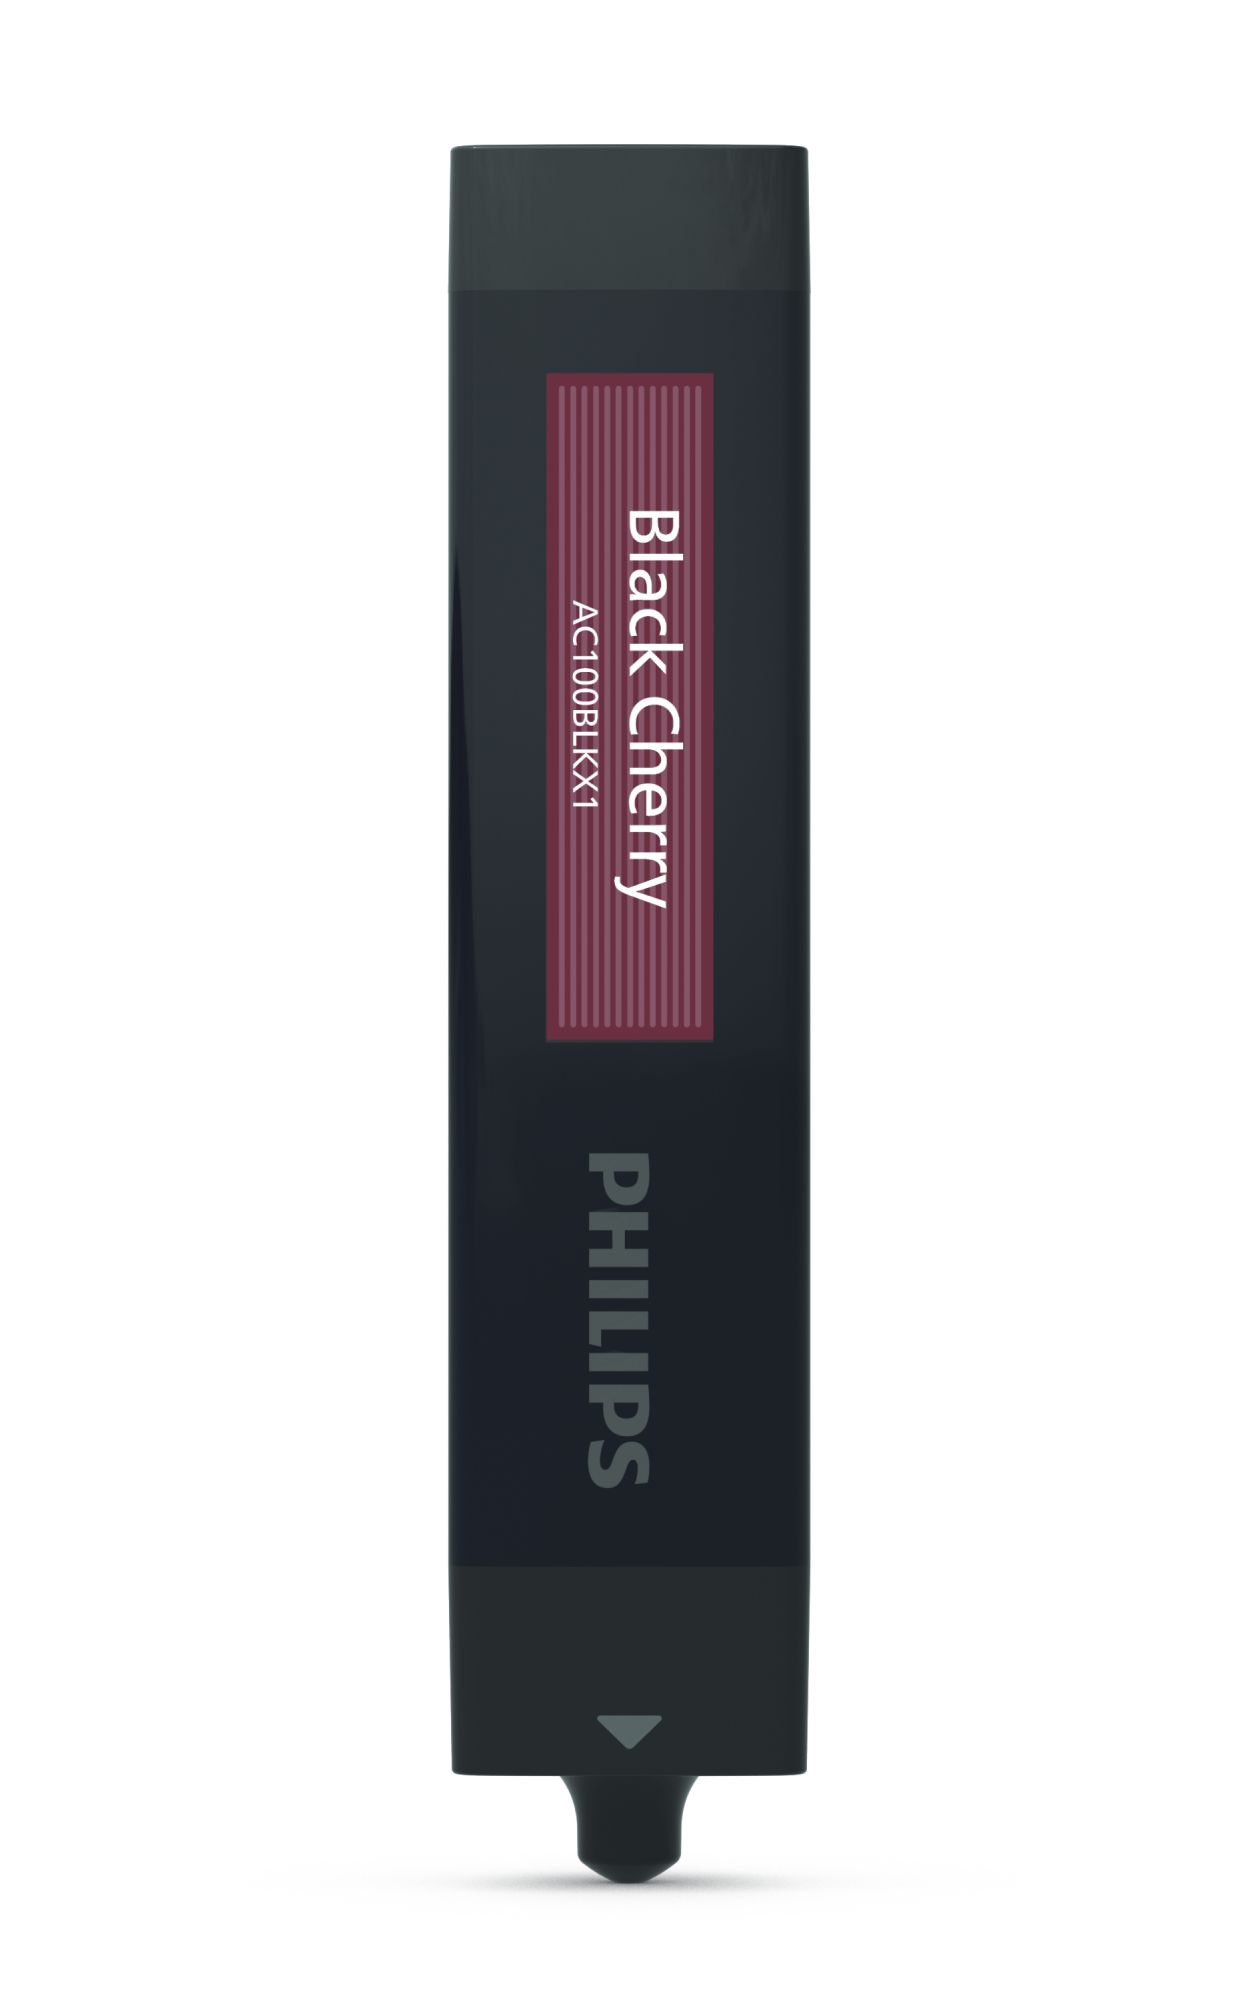 OlfaPure 7300 Cartouche d'aromathérapie voiture - Black Cherry  LUMAC100BLKX1/50